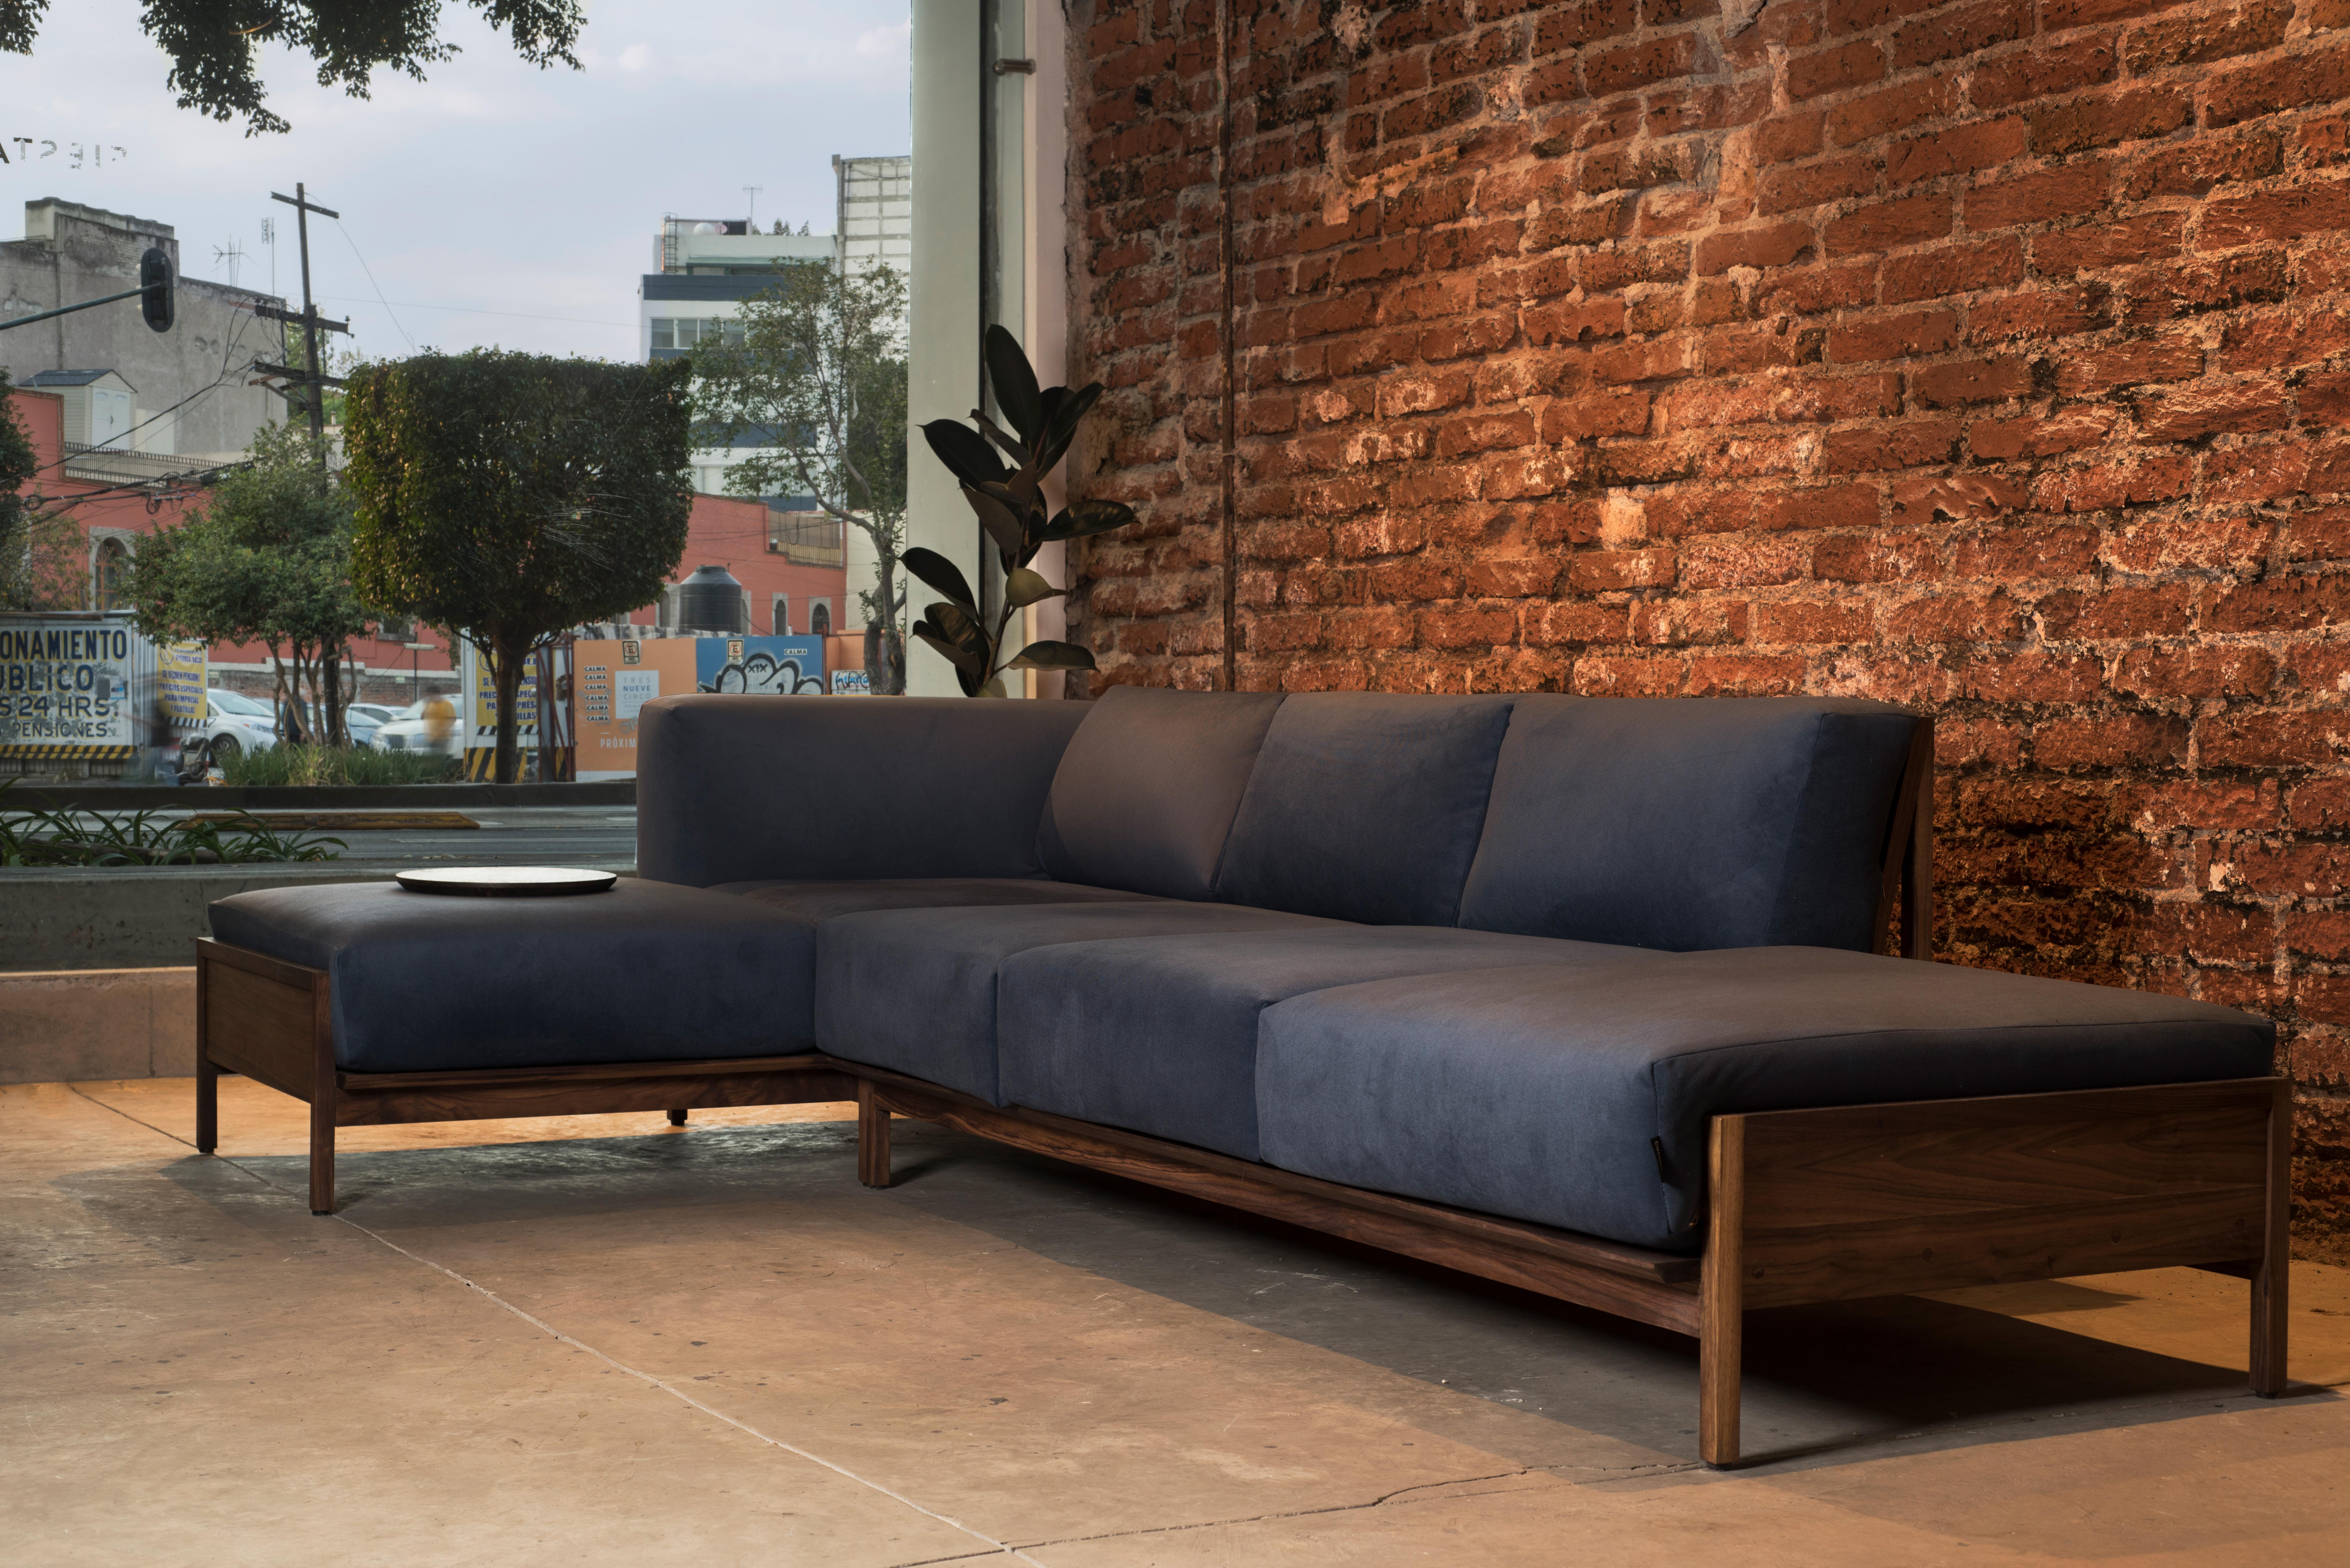 Escuadra Confort, Mexican Contemporary Sofa by Emiliano Molina for Cuchara For Sale 1